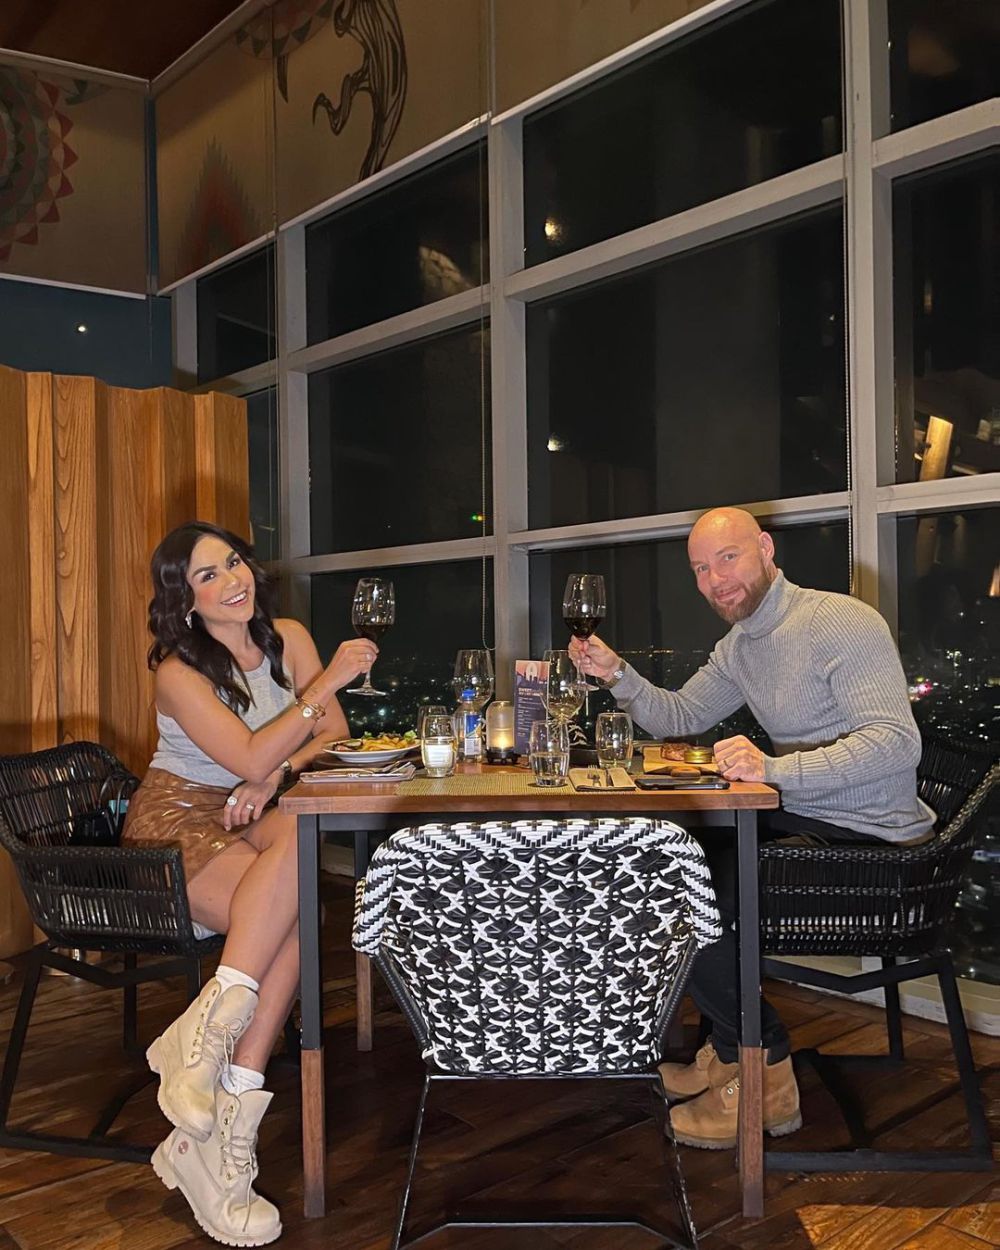 9 Pasangan Artis Dinner Romantis di Restoran Mewah, View Kece